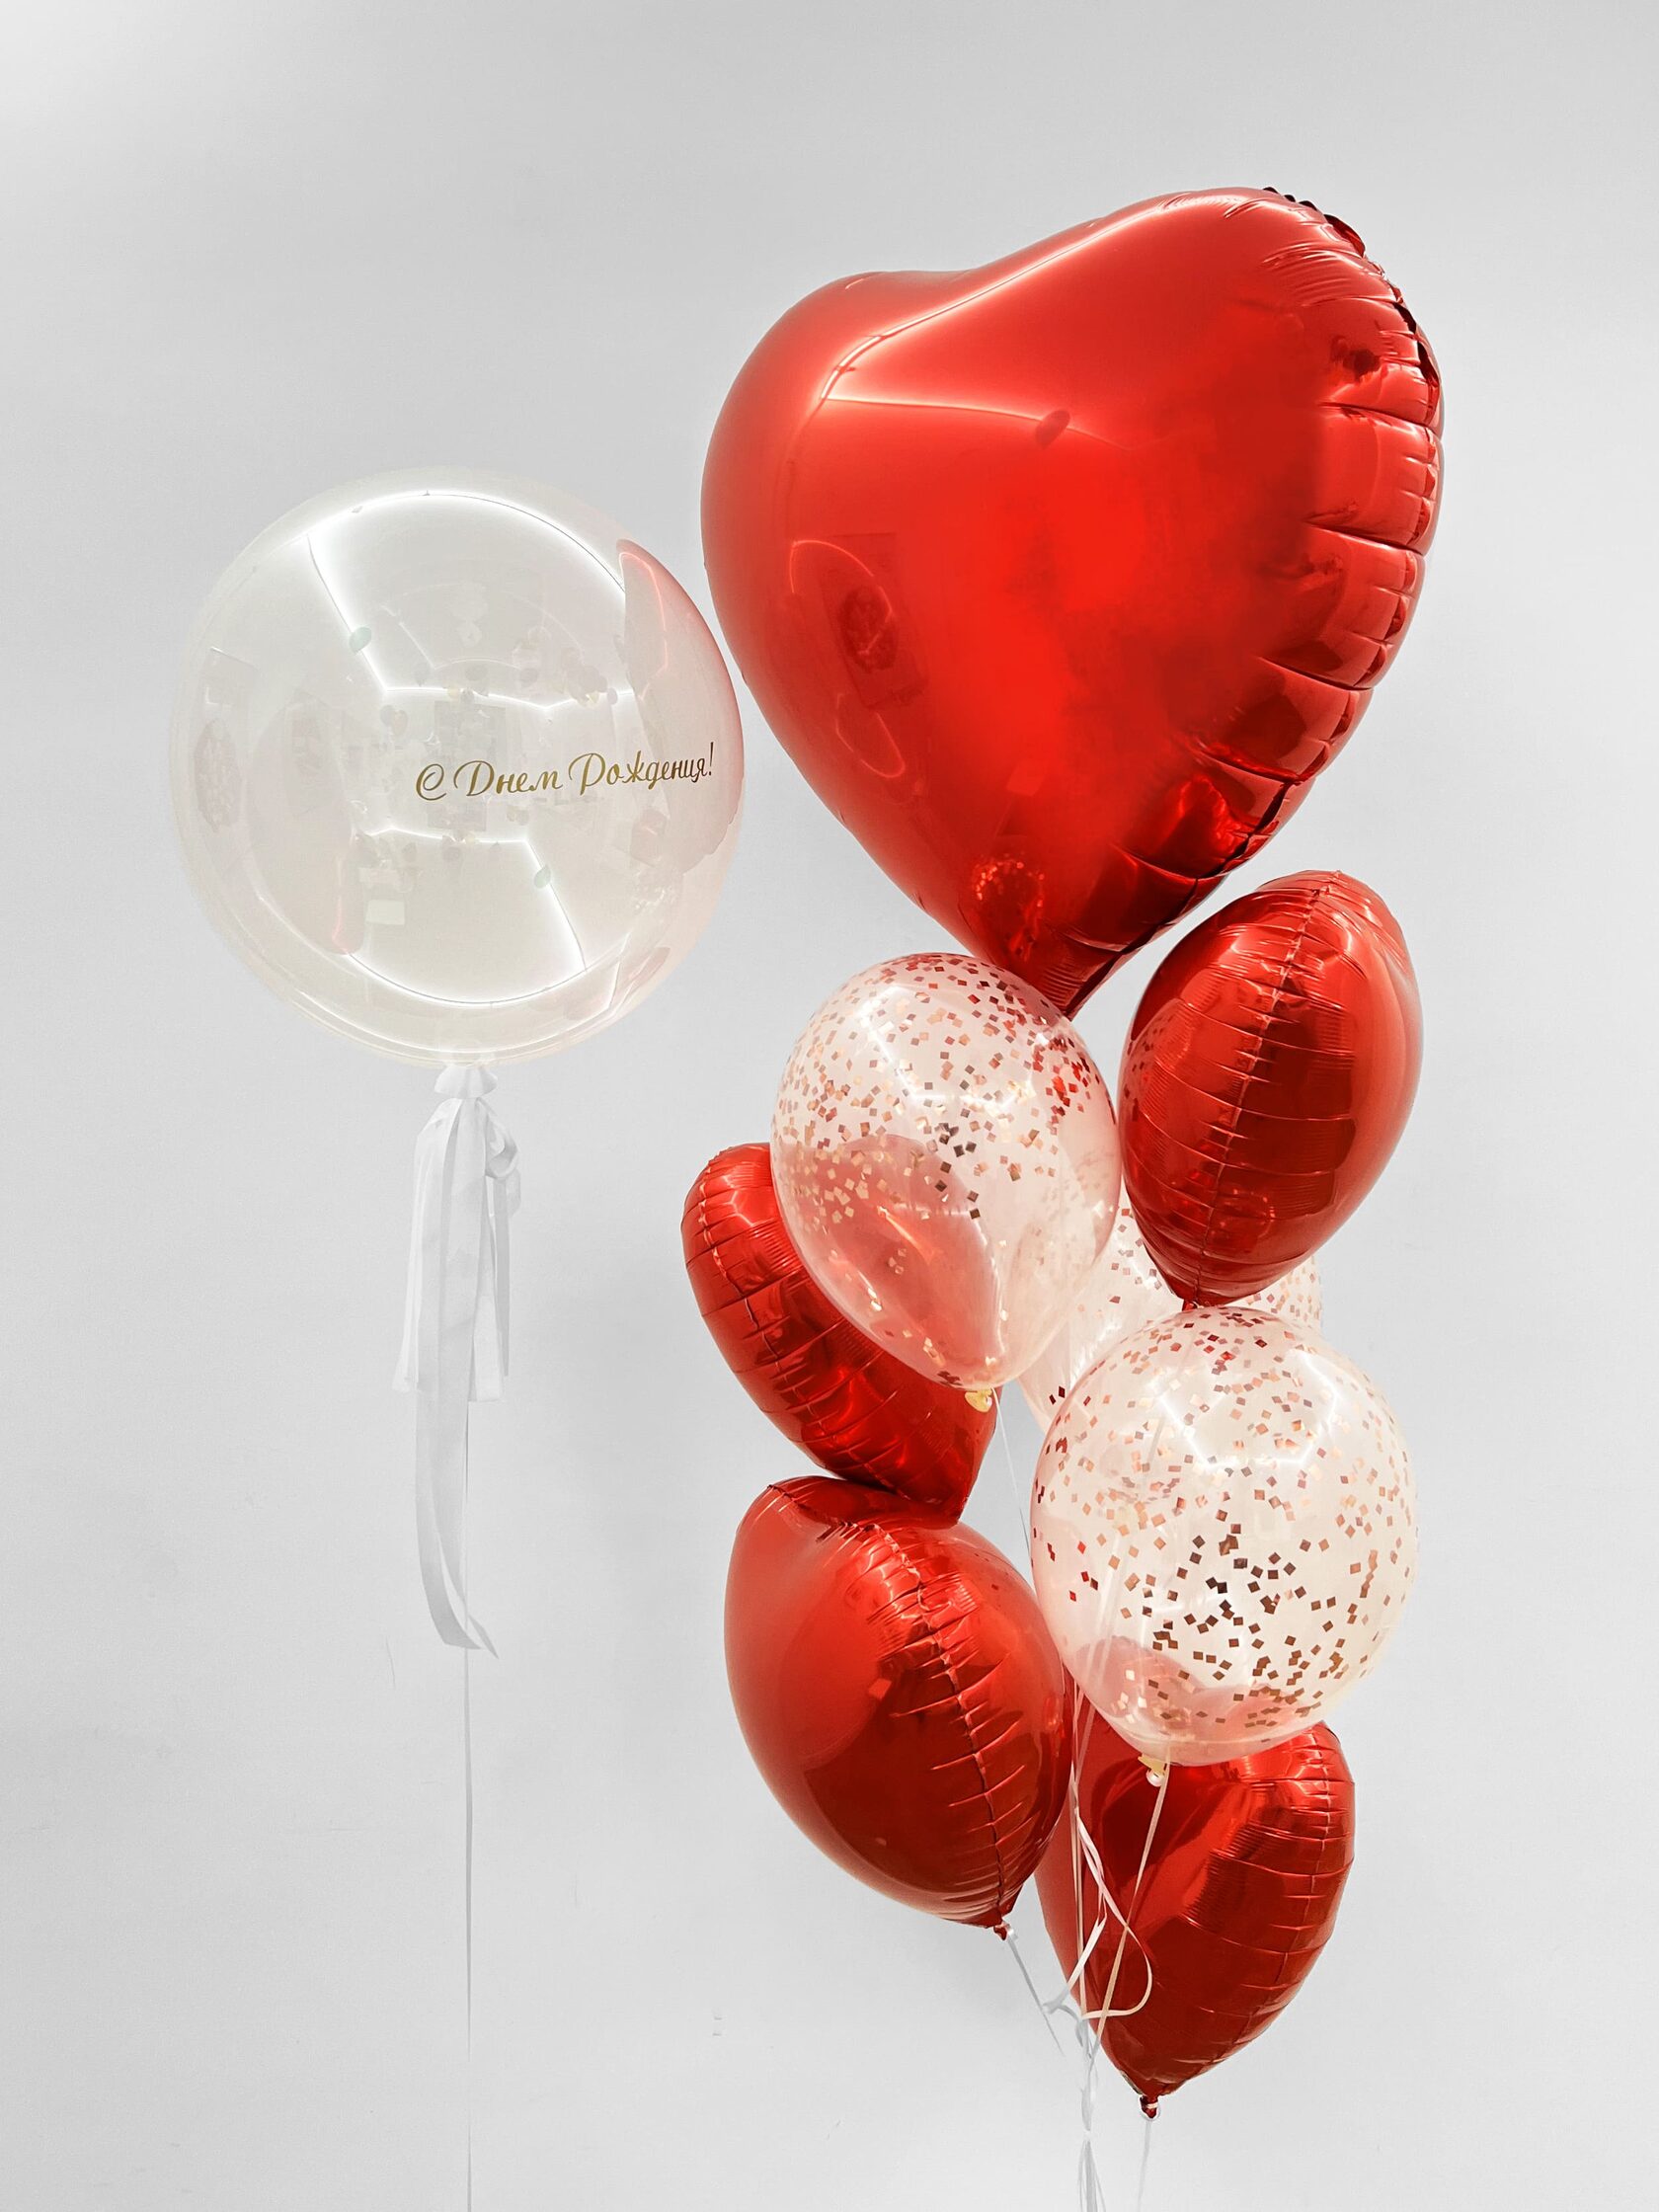 фонтан из воздушных шаров свадьба Фонтан из шаров «Алое сердце» - 10 шаров + шар Bubbles (сфера) - красные сердца конфетти